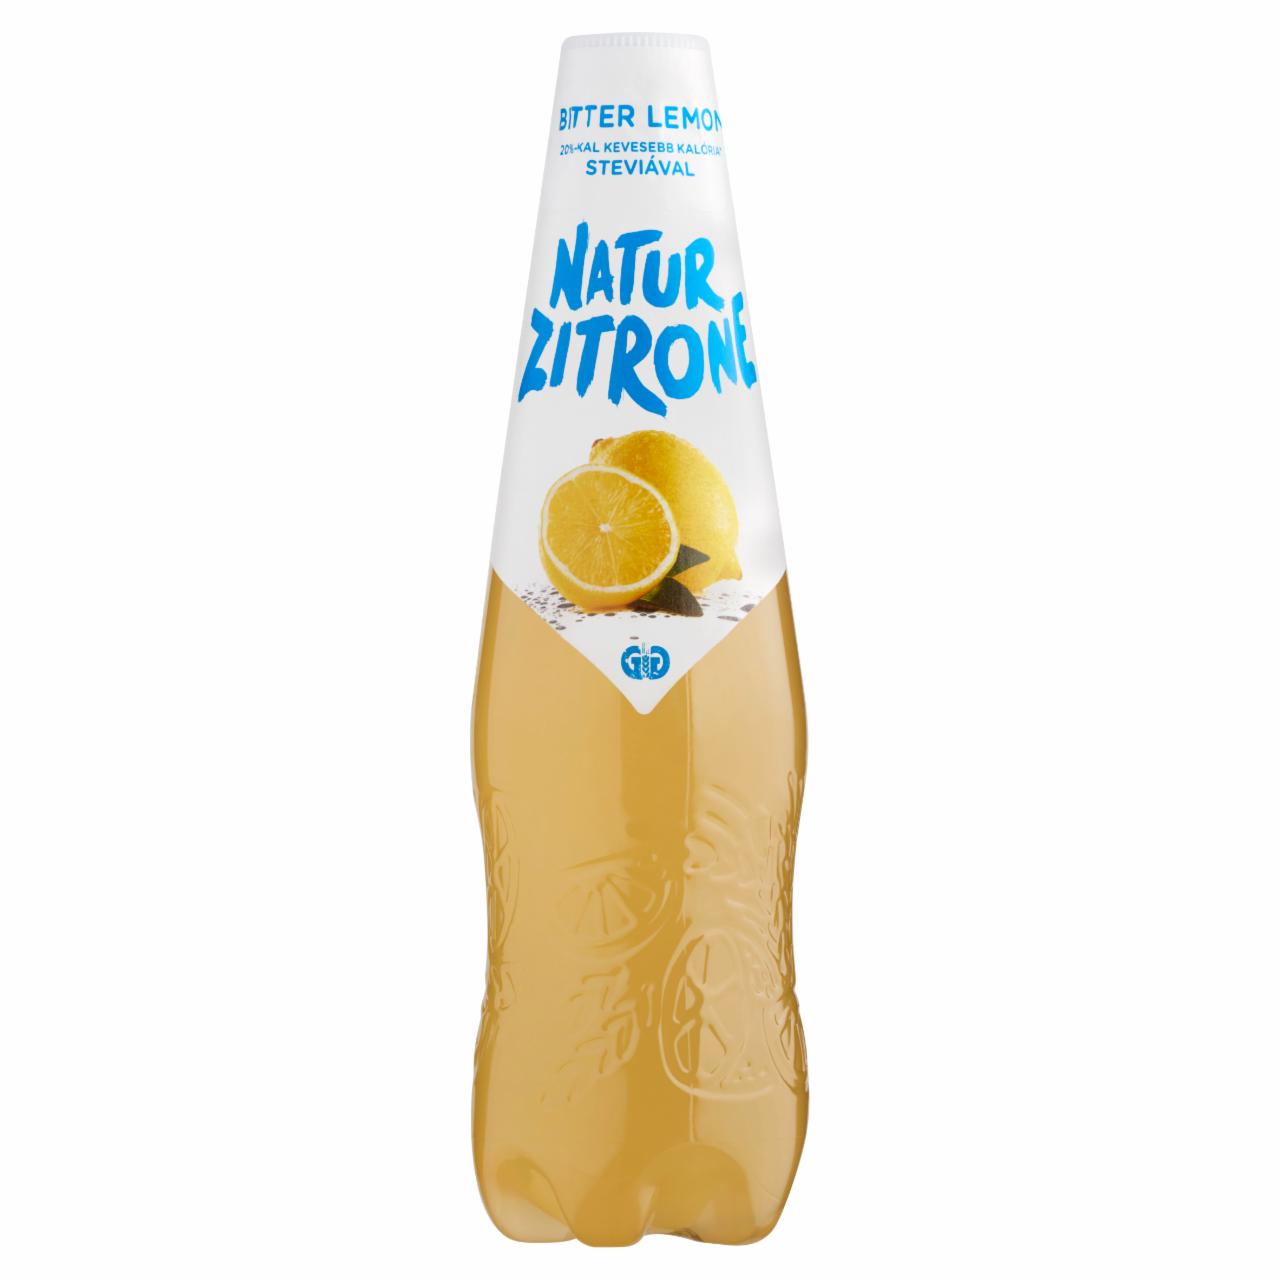 Képek - Natur Zitrone Bitter Lemon ízű alkoholmentes sörital 0,5 l PET palack